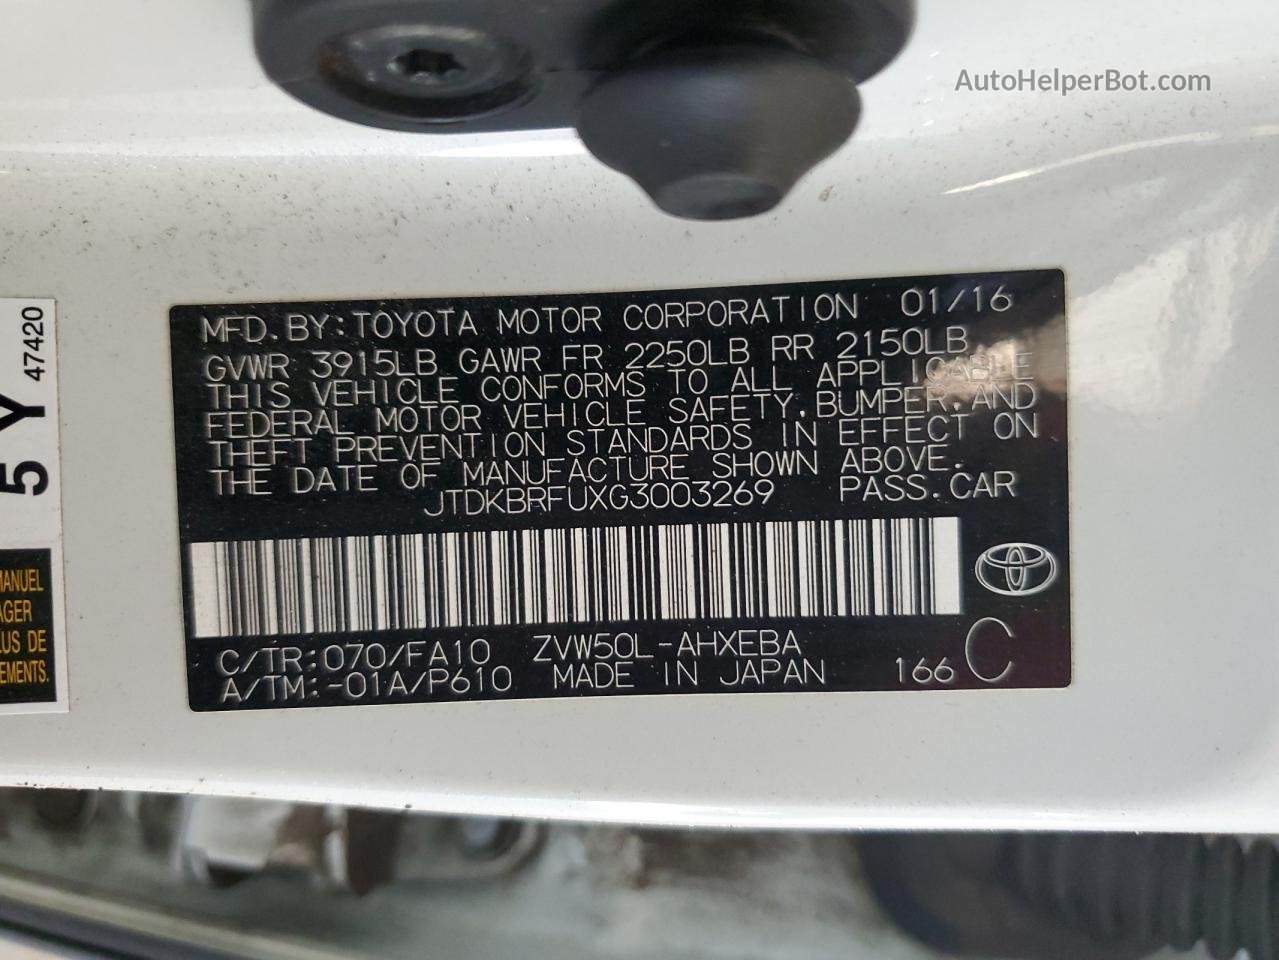 2016 Toyota Prius  White vin: JTDKBRFUXG3003269